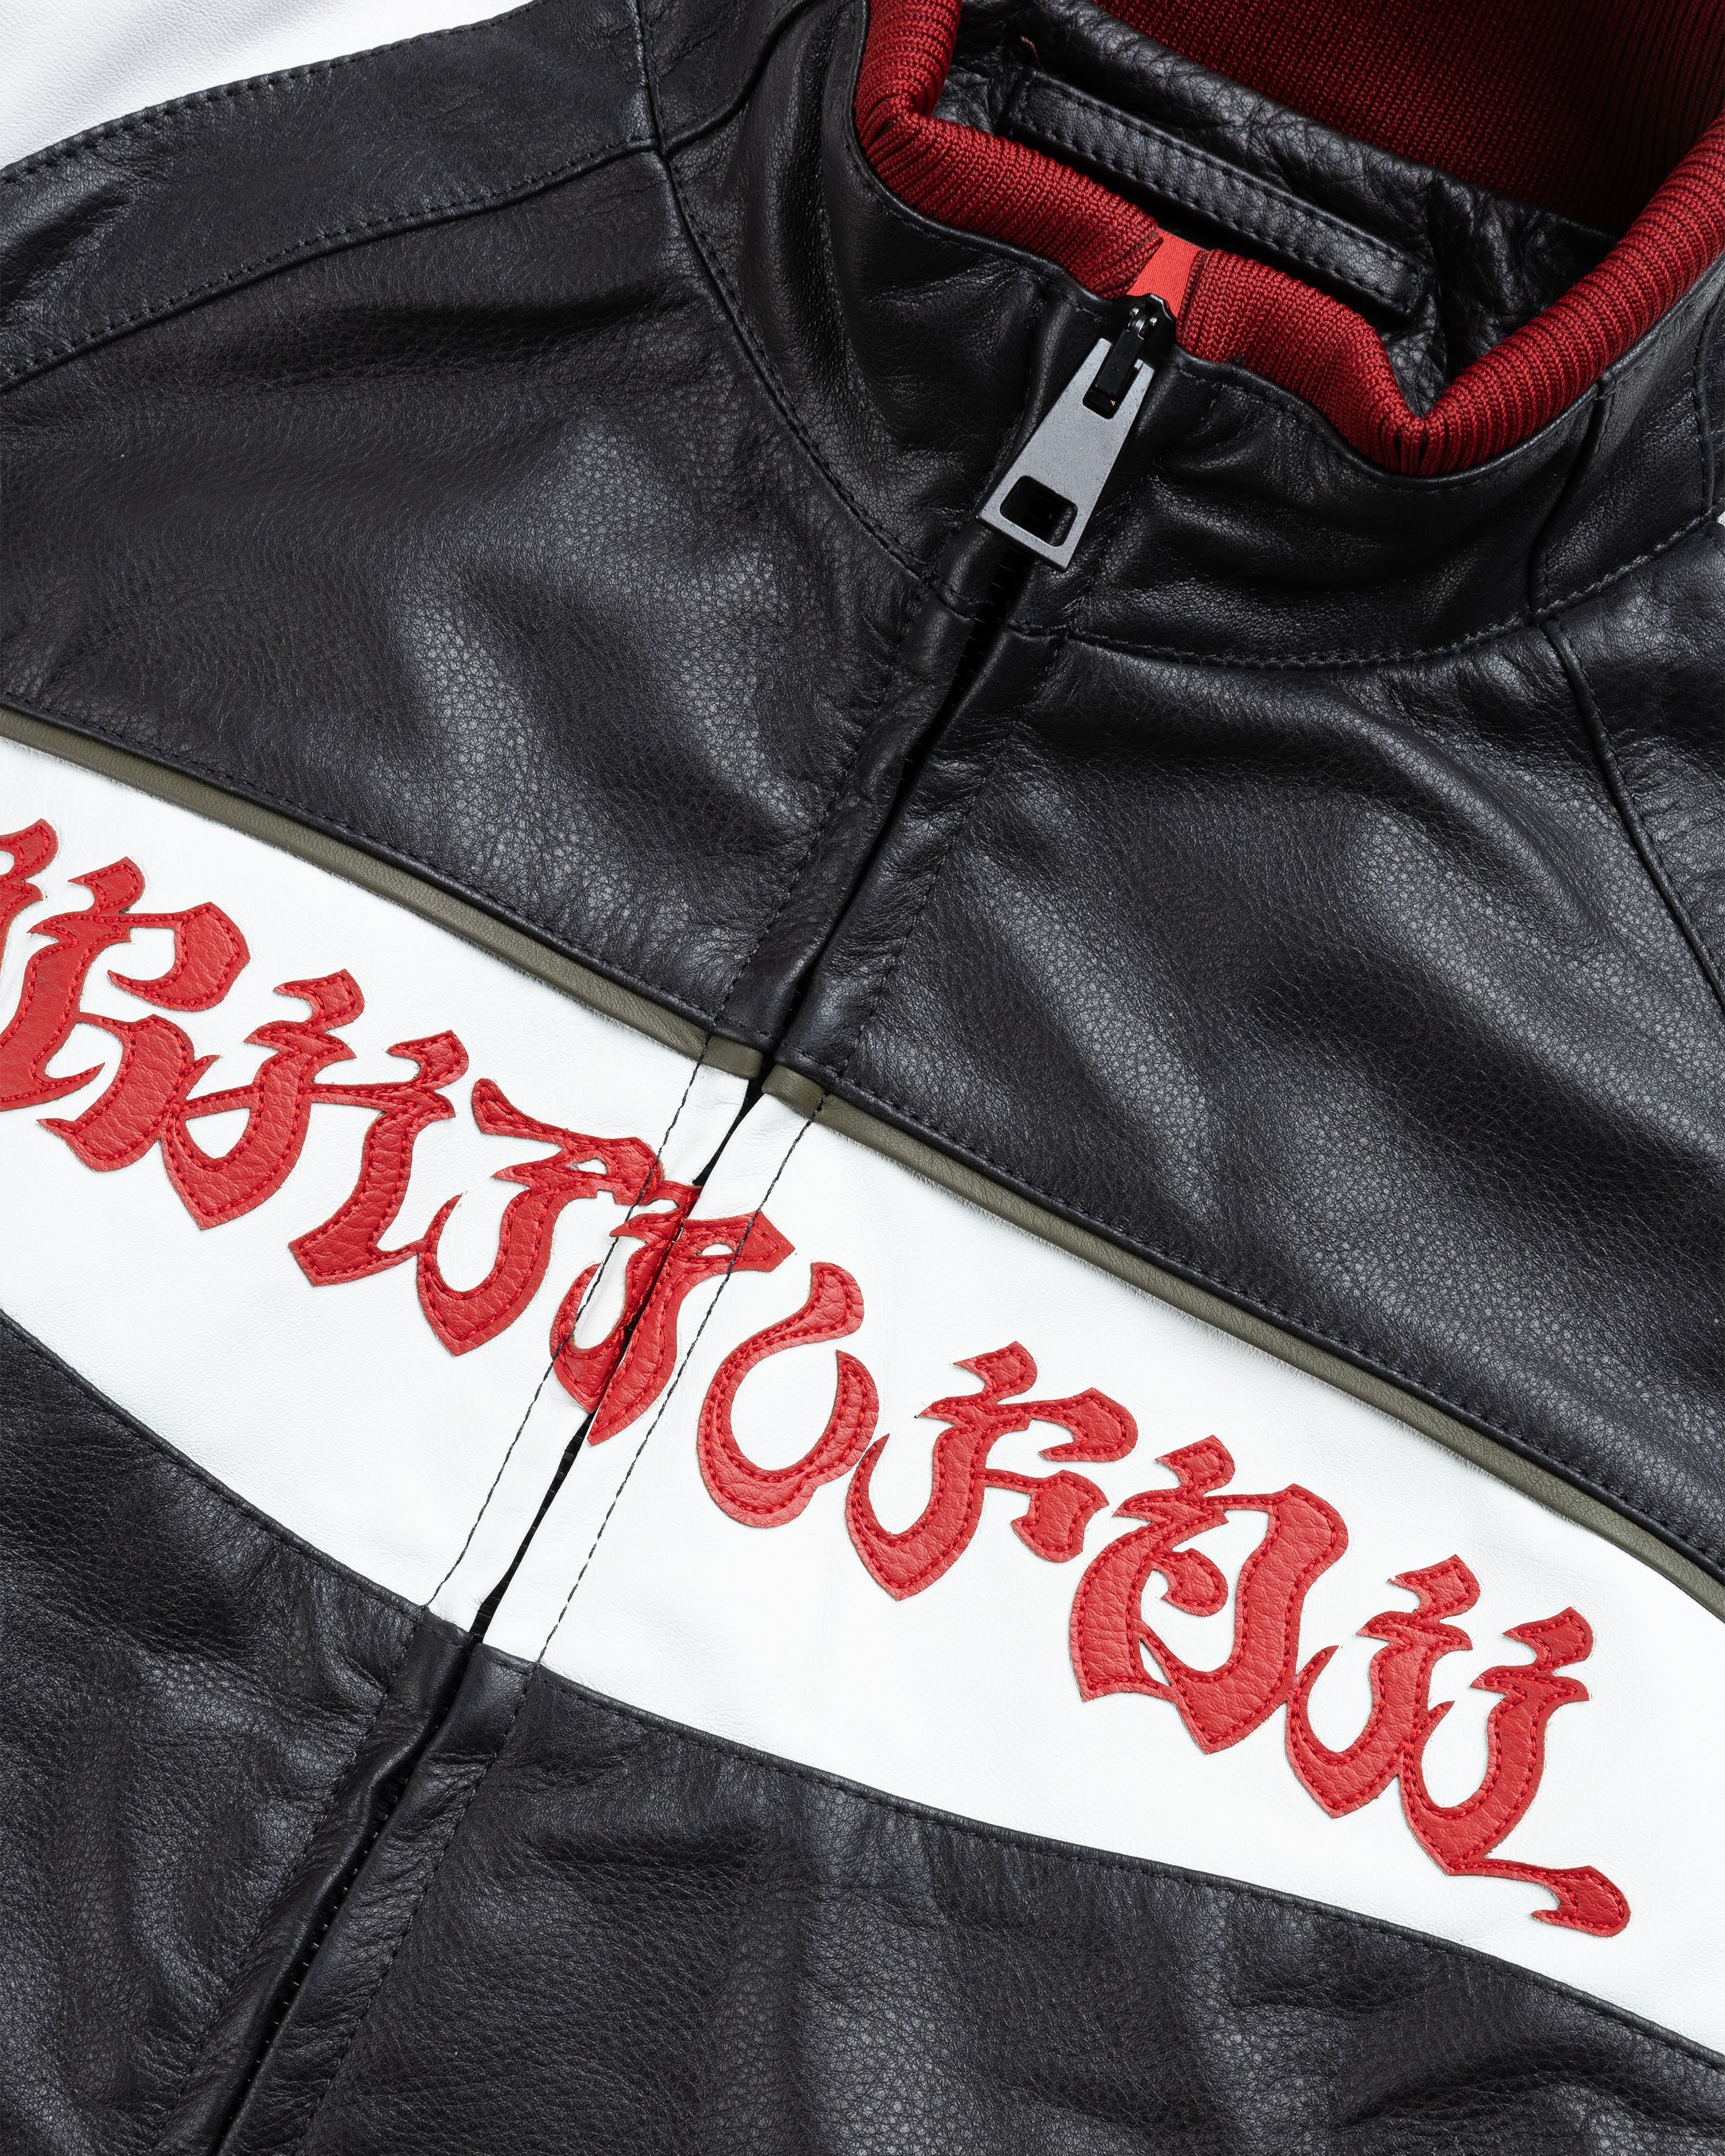 KUSIKOHC - RIDER LEATHER JACKETS - Leather Jackets - RED - Image 7